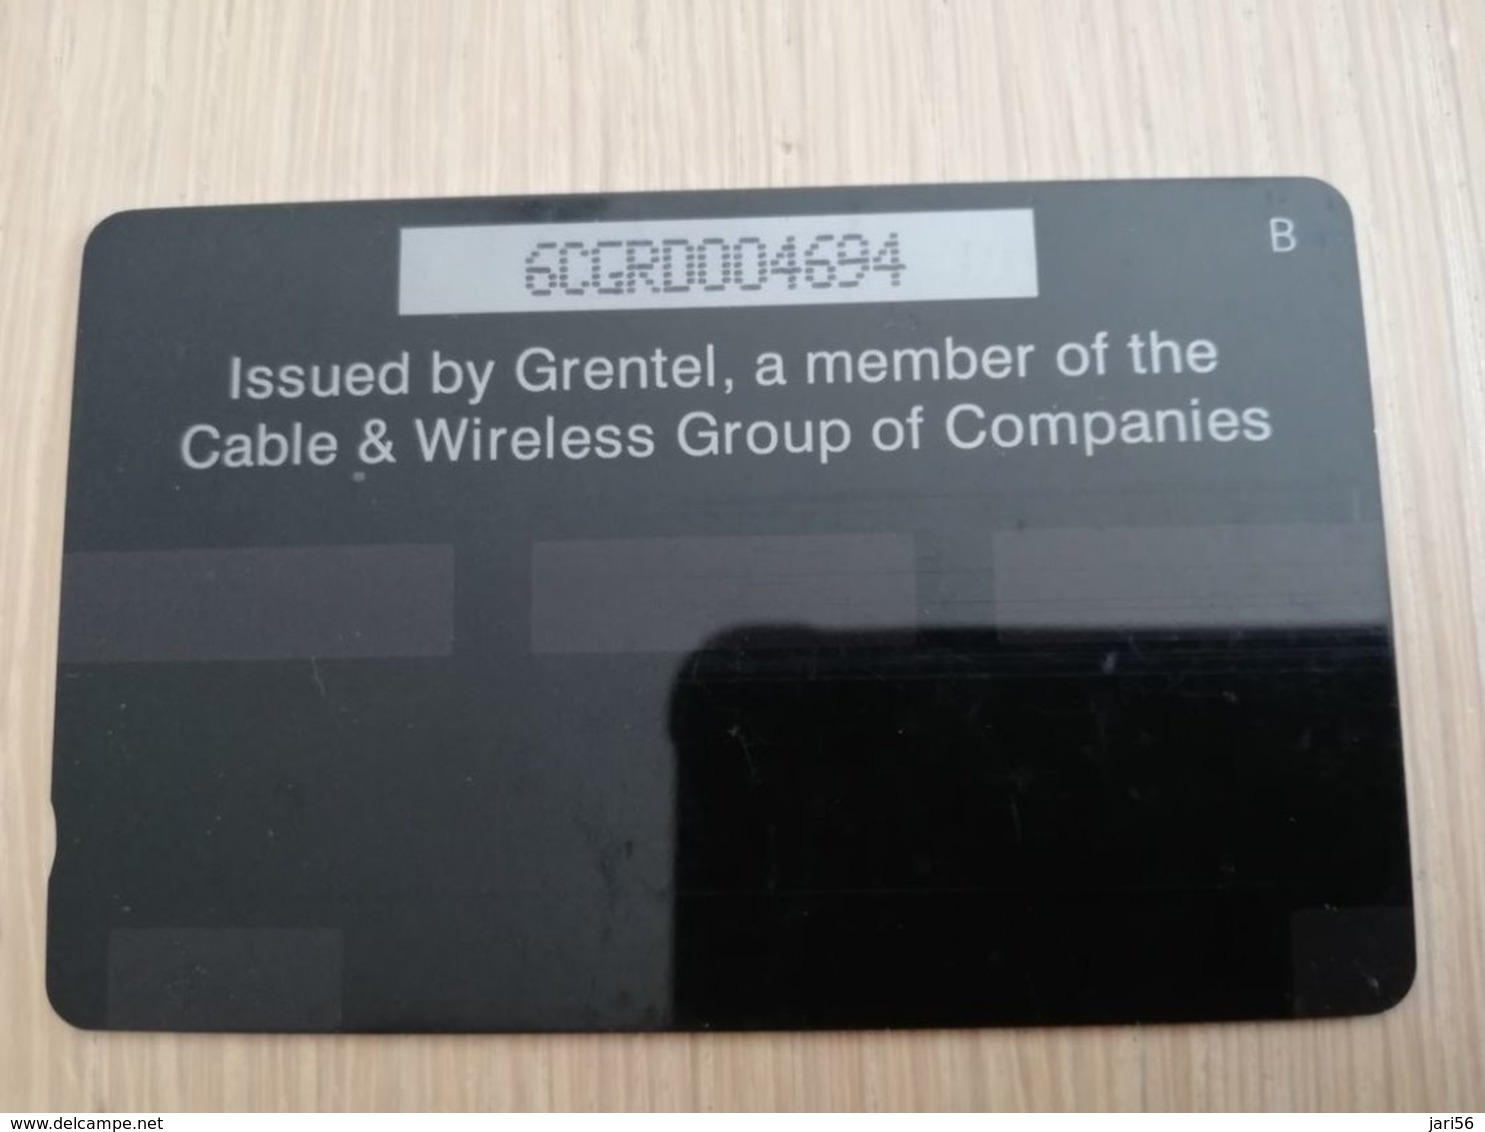 GRENADA  $ 75,- GPT GRE-6D  NUTMEG     MAGNETIC    Fine Used Card    **2239** - Grenada (Granada)